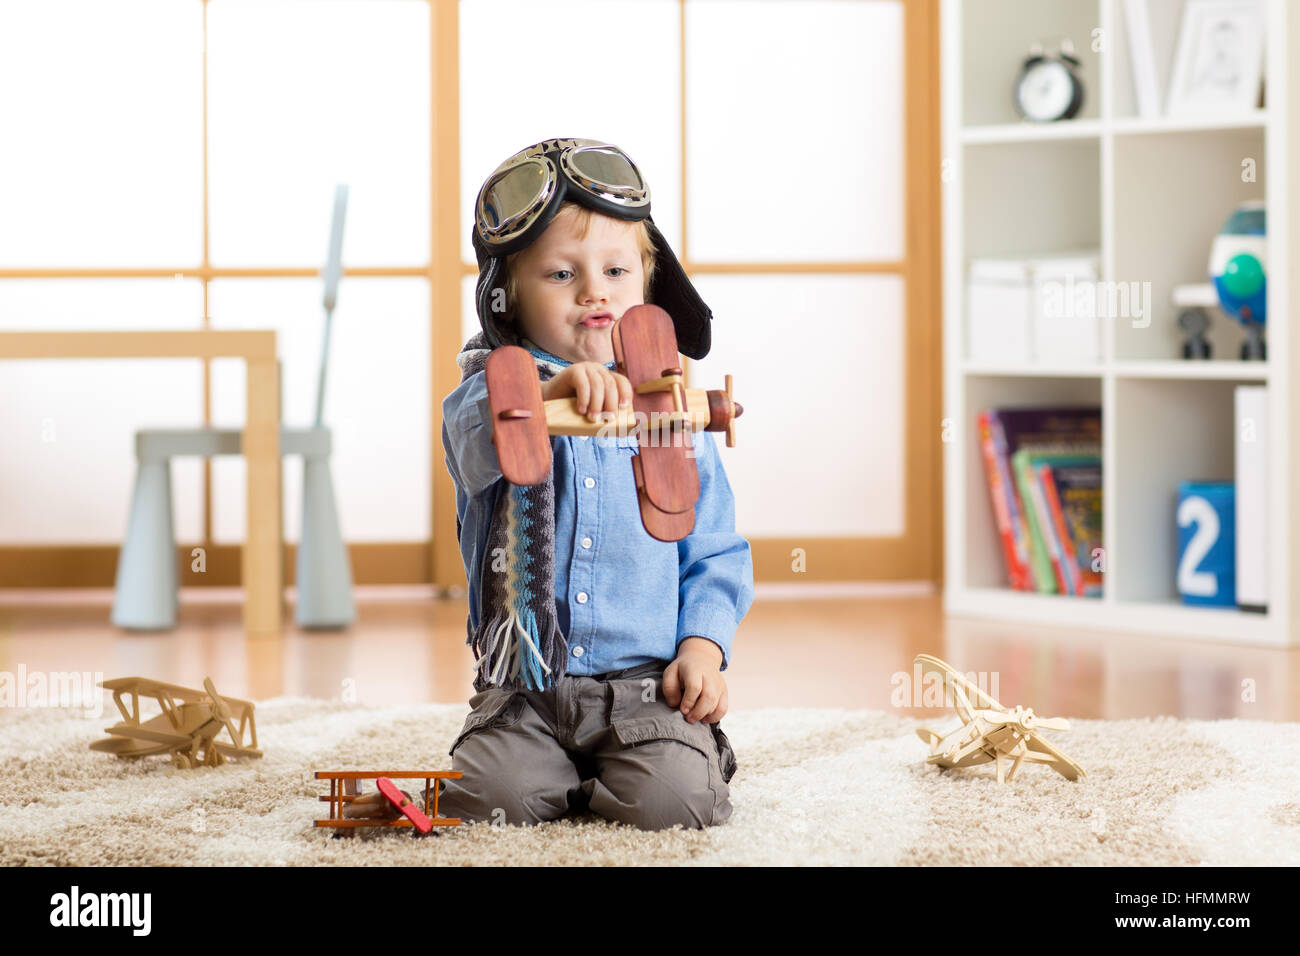 Kind junge vorgibt, pilot zu werden. Kind spielt mit Spielzeug Flugzeuge zu Hause. Reisen und träumen-Konzept Stockfoto